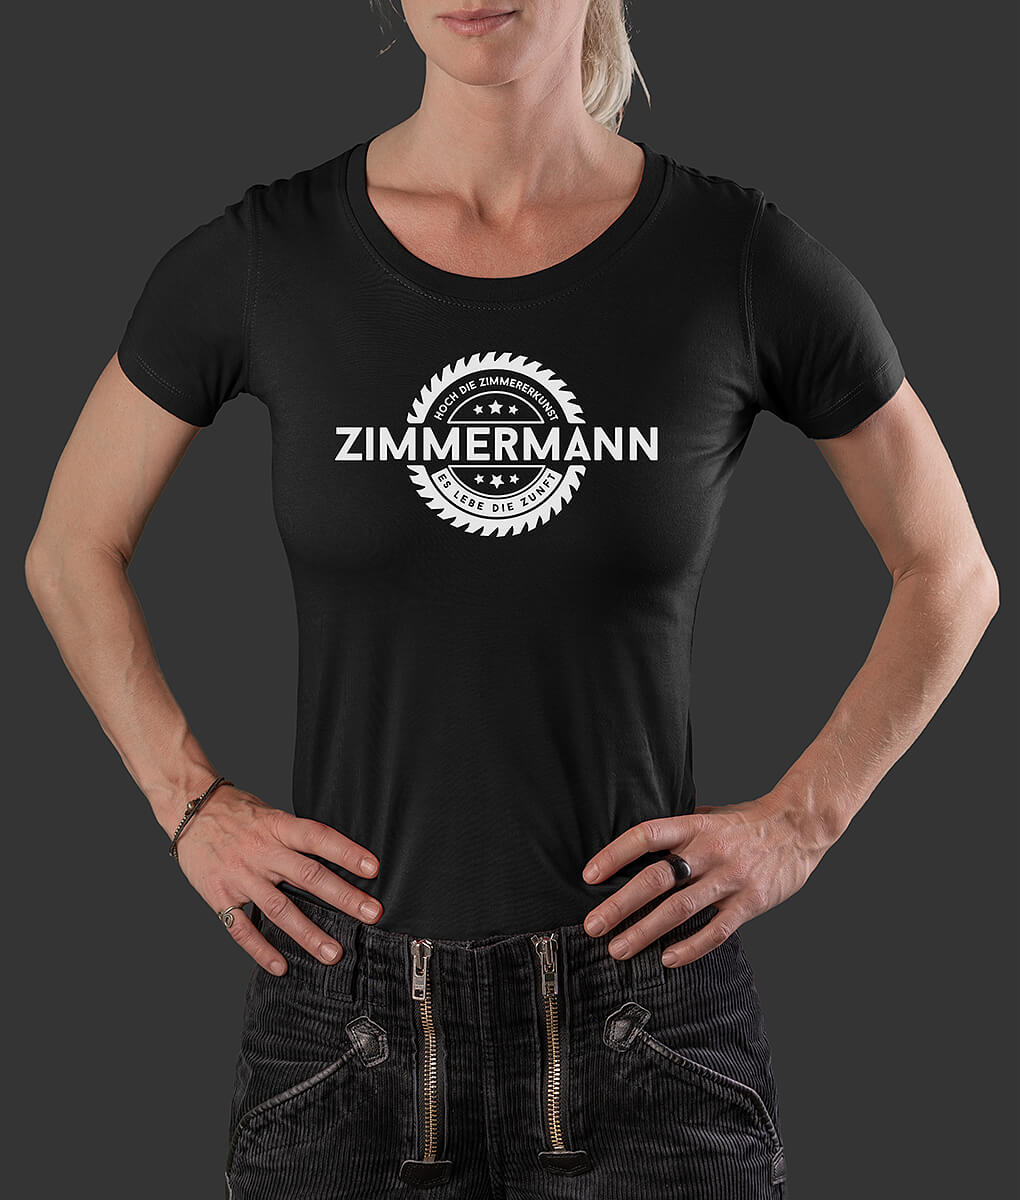 T-Shirt Louisa Säge Zimmermann Brust schwarz L